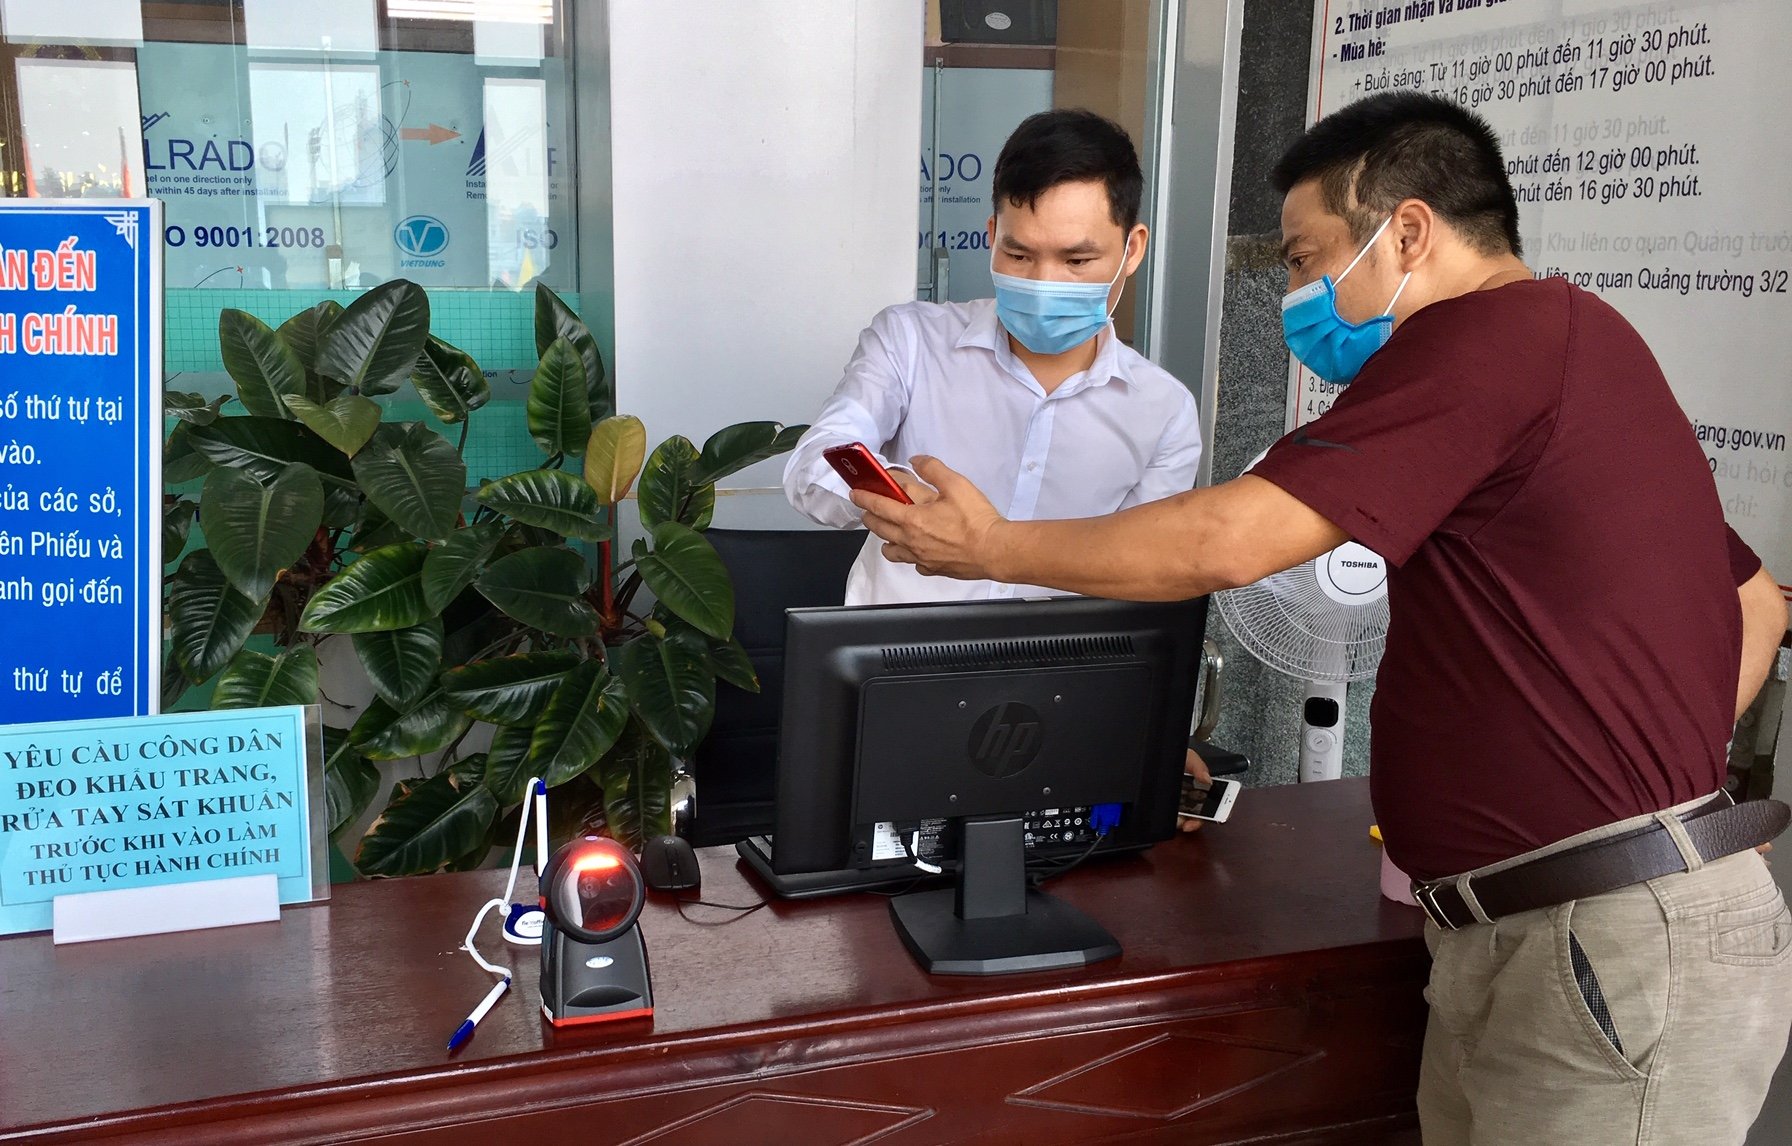 Bắc Giang: Sử dụng máy quét mã QR phục vụ phòng chống, dịch Covid-19